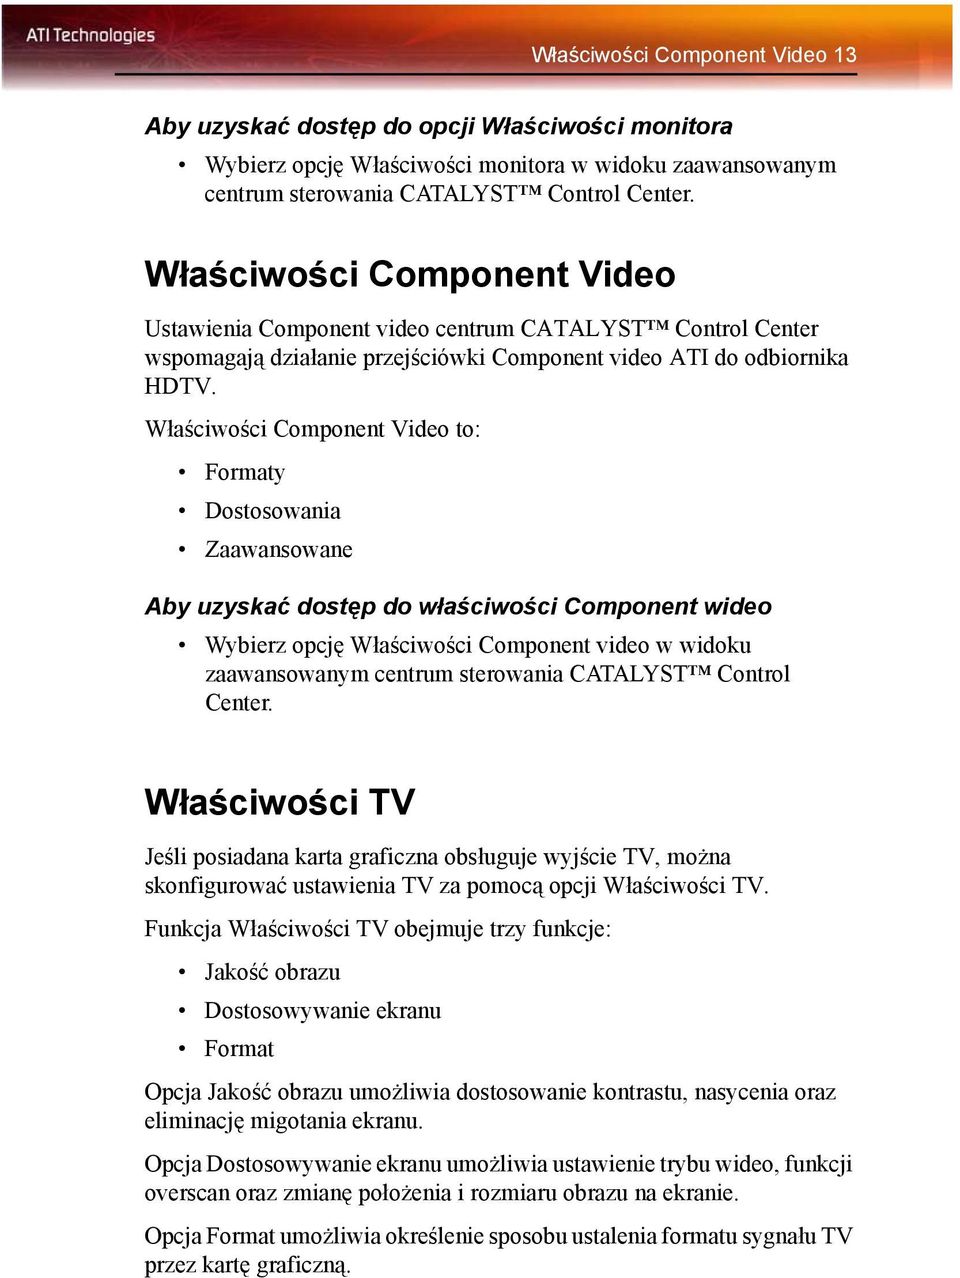 Właściwości Component Video to: Formaty Dostosowania Zaawansowane Aby uzyskać dostęp do właściwości Component wideo Wybierz opcję Właściwości Component video w widoku zaawansowanym centrum sterowania